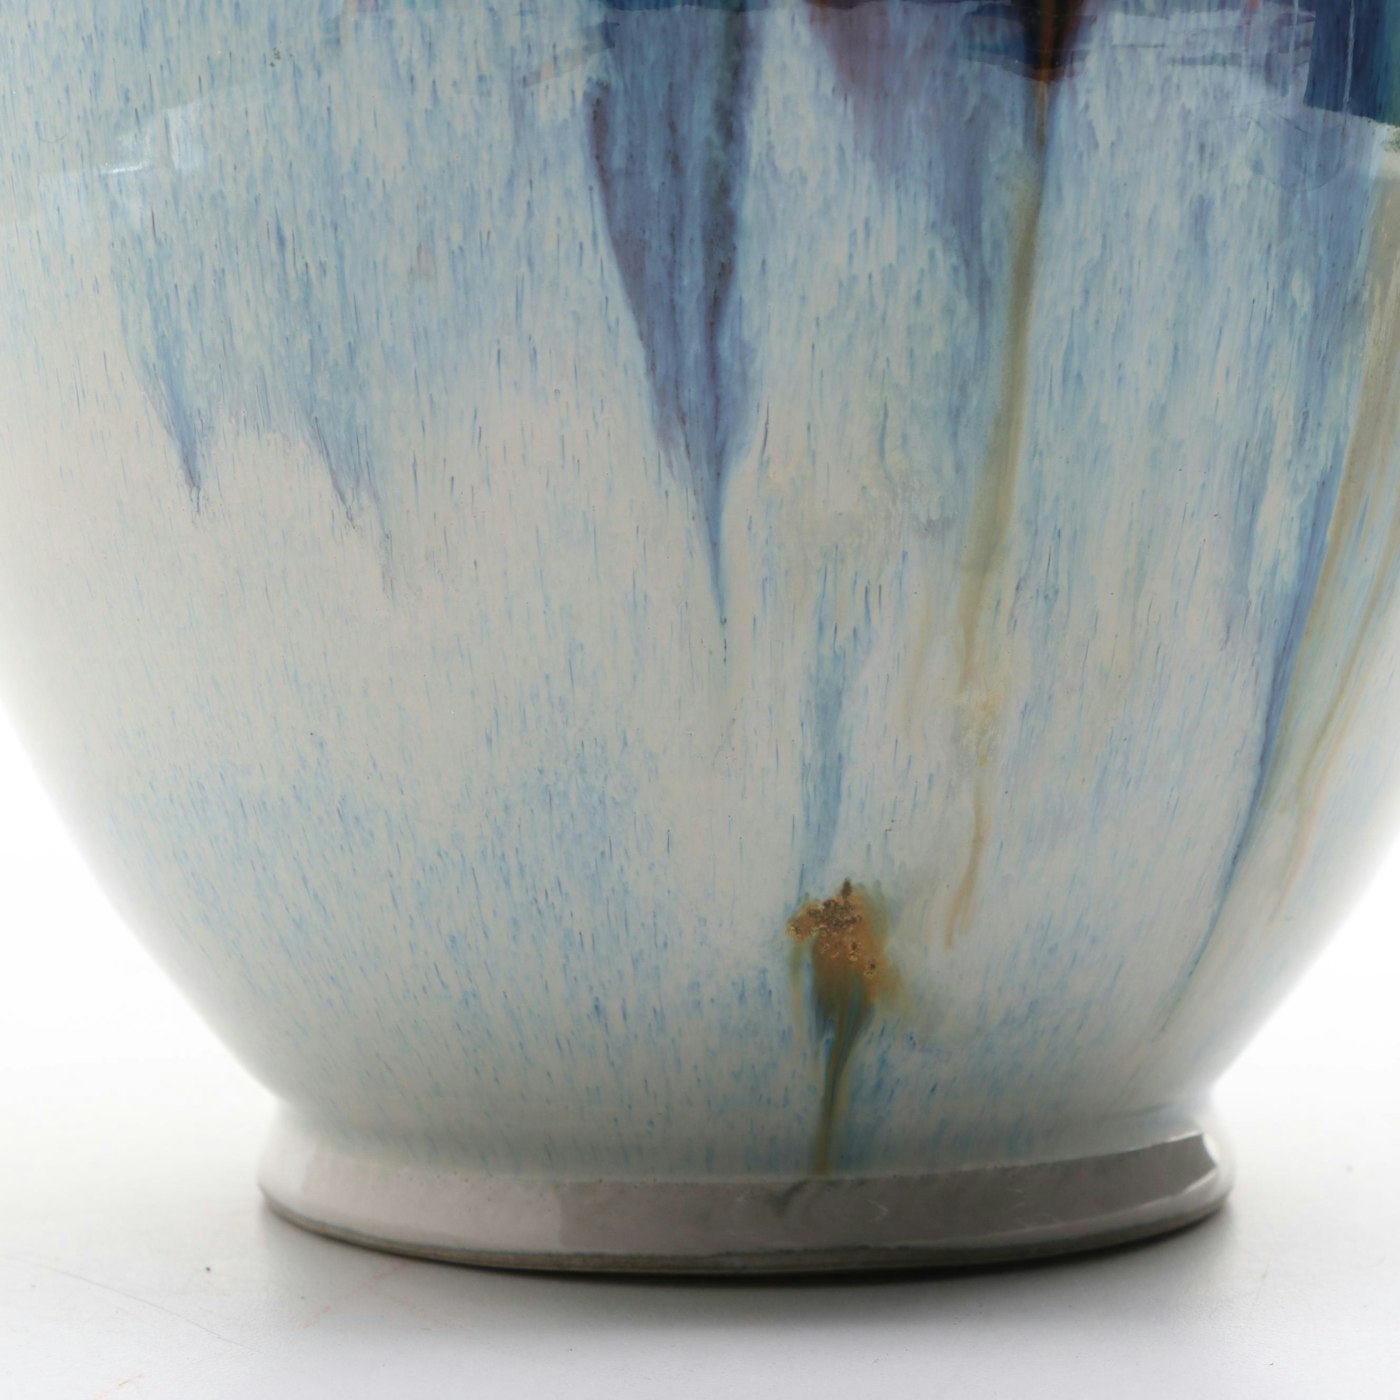 Ulla Merz Wheel Thrown Glazed Porcelain Art Pottery Vase | EBTH